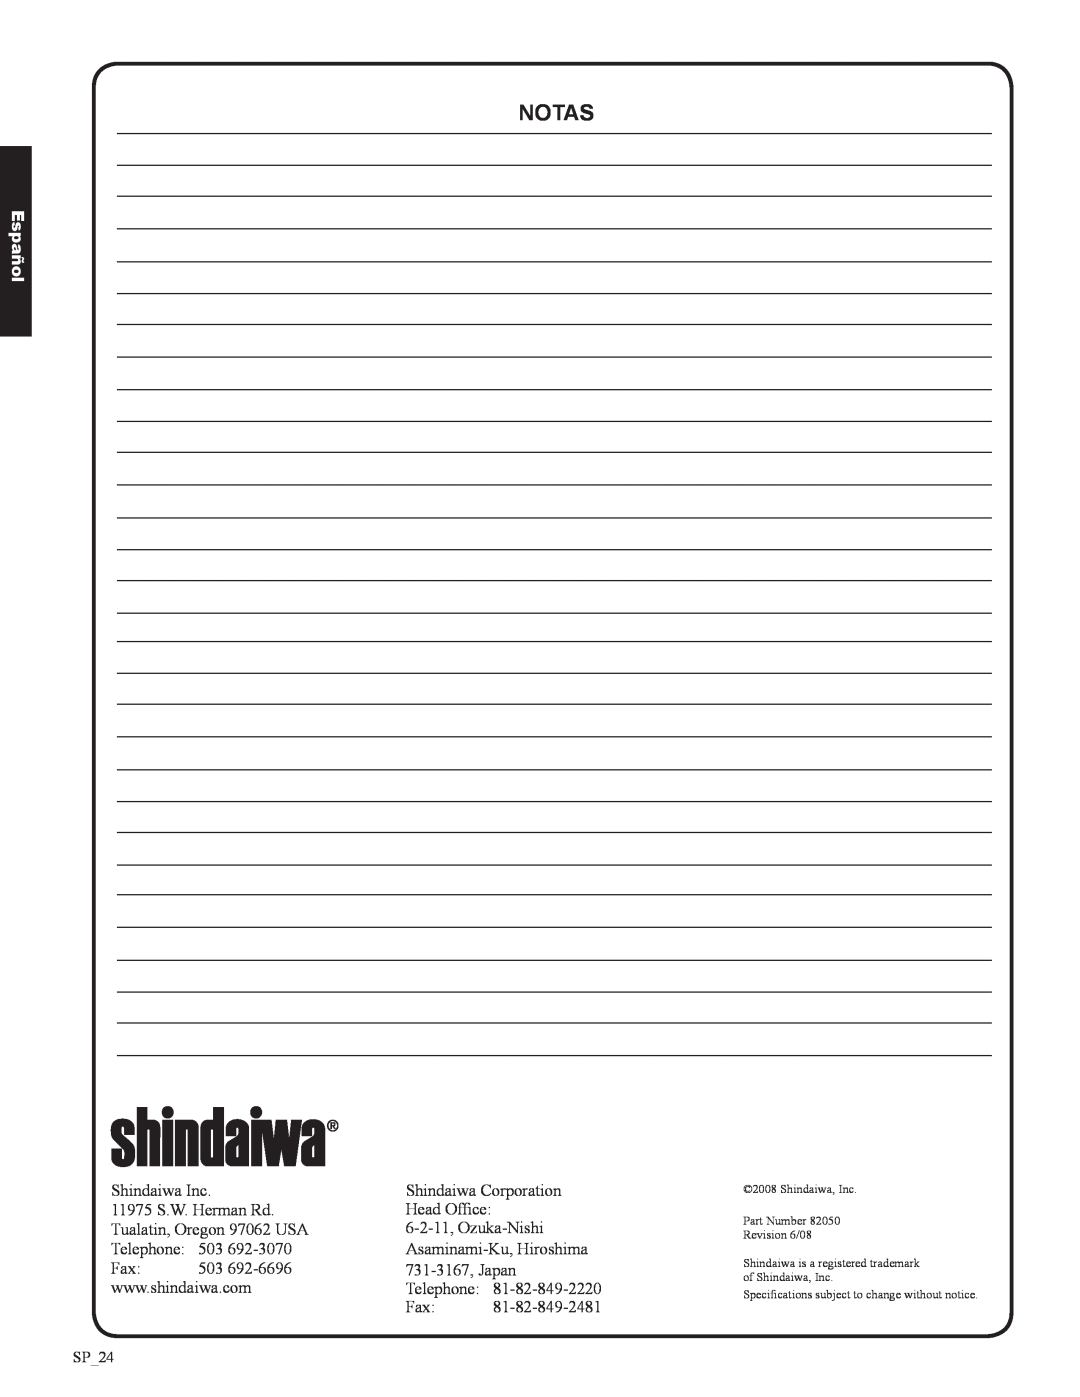 Shindaiwa EB633RT, 82050 manual notas, Español, SP_24 